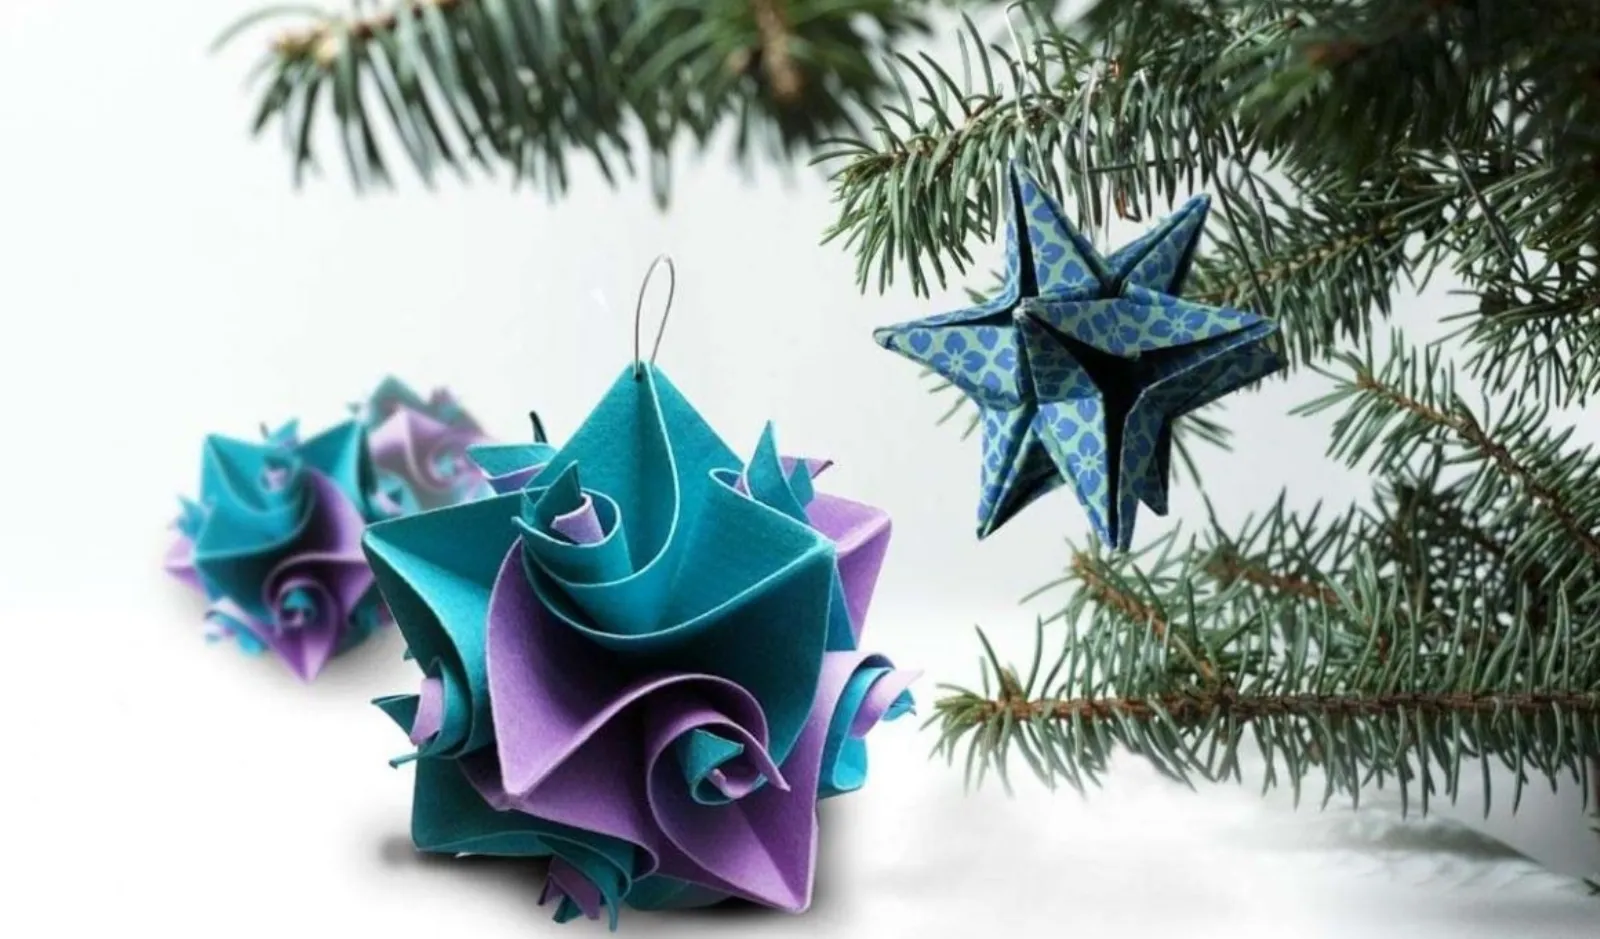 Origami Decorazioni Natalizie.Idee Da Copiare Per Realizzare Alberi Di Natale Originali